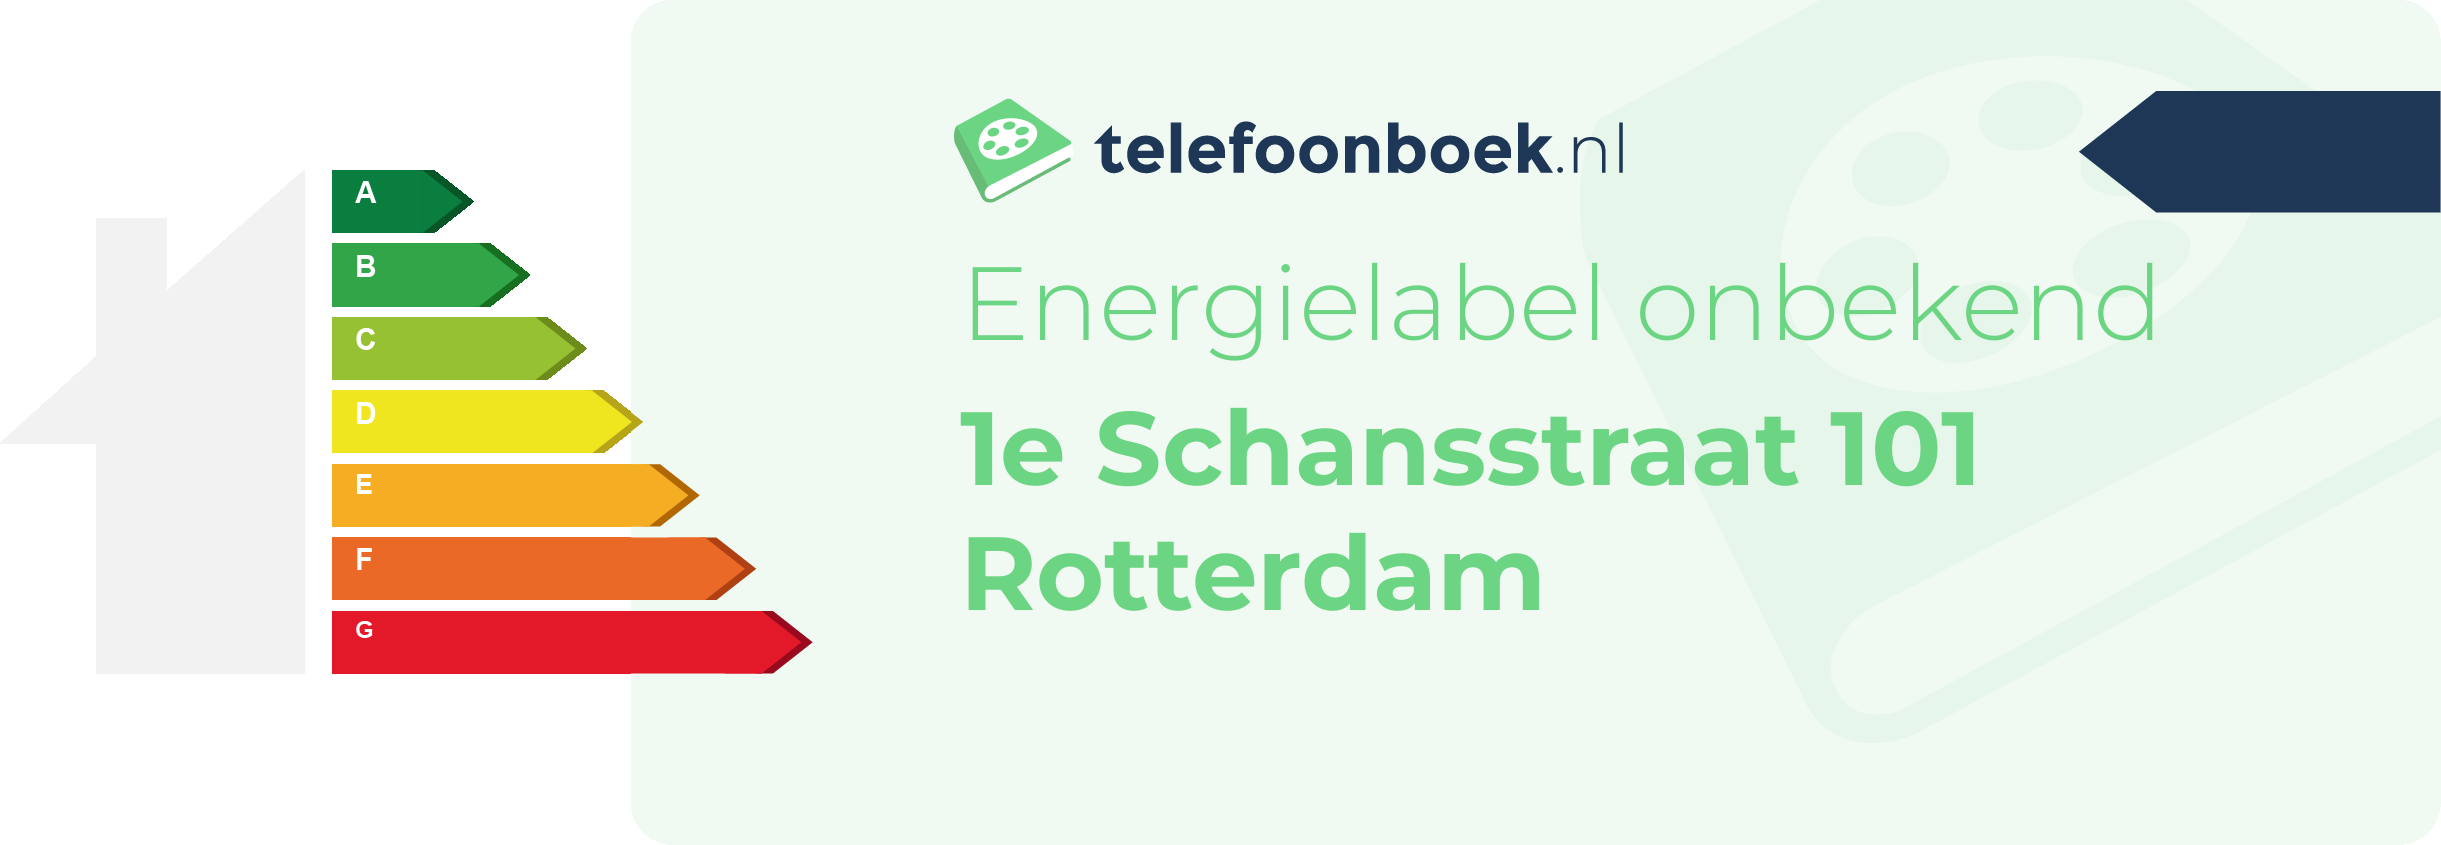 Energielabel 1e Schansstraat 101 Rotterdam